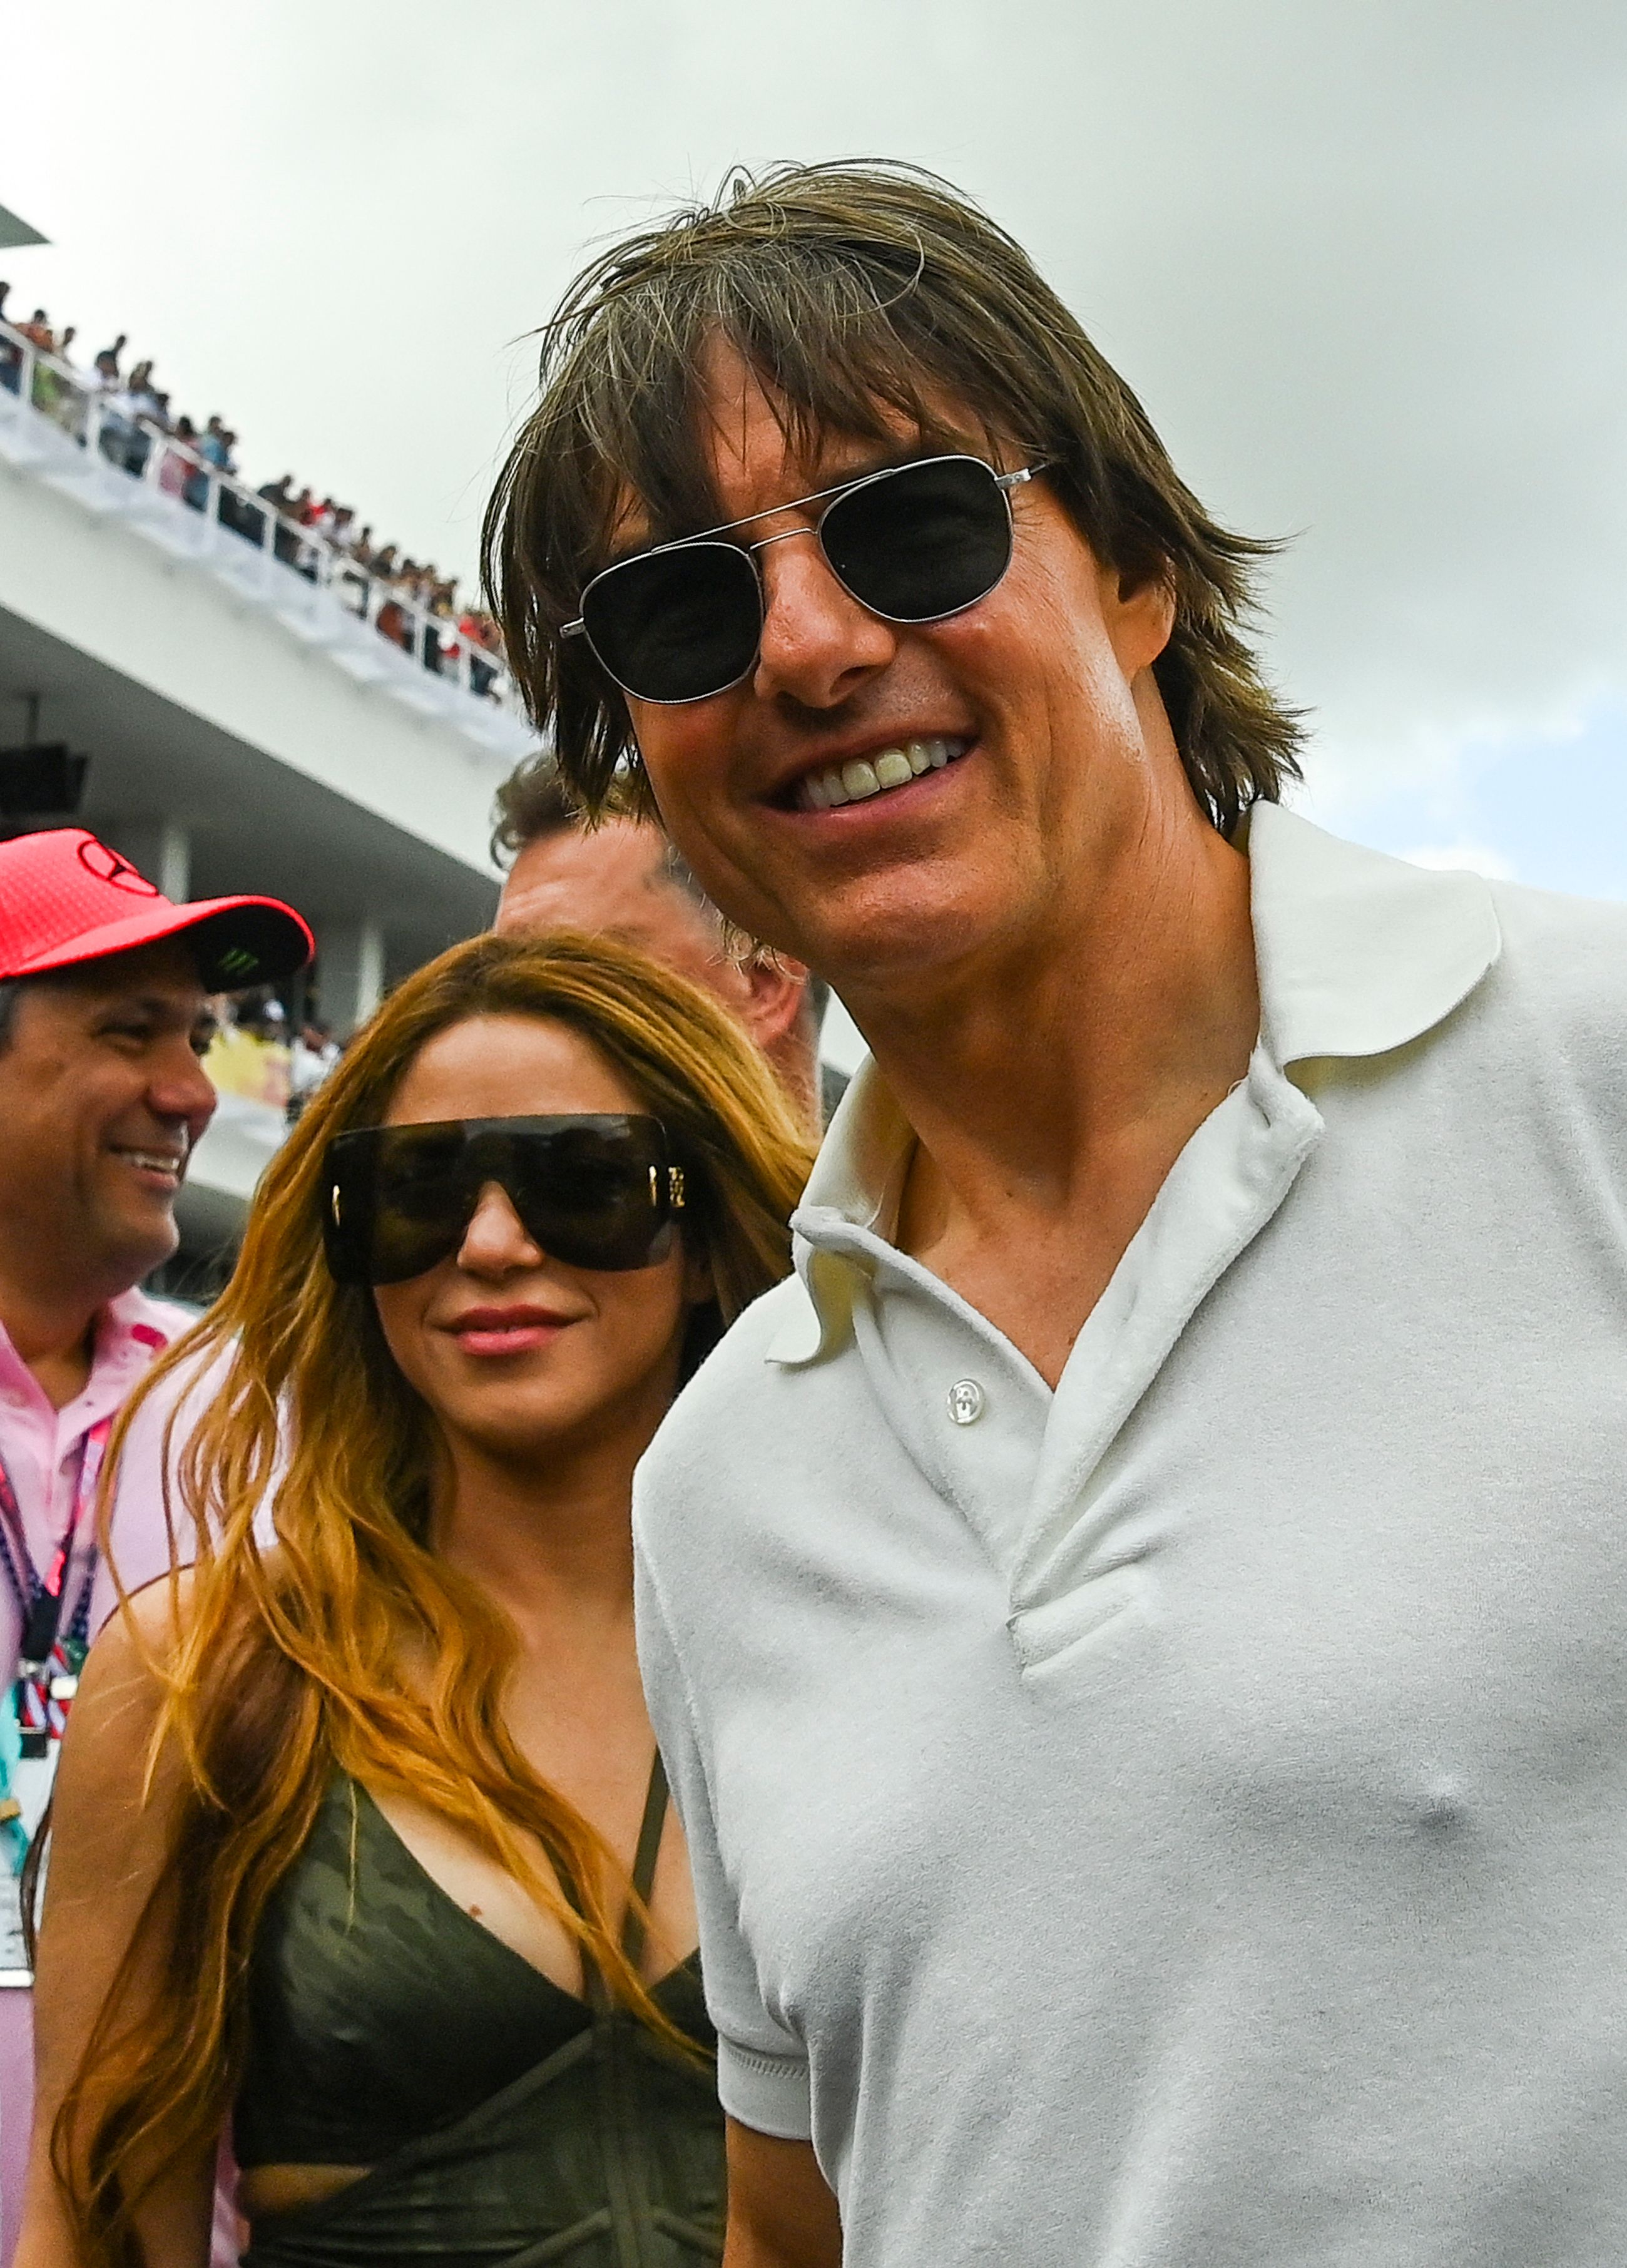 Andere haben vorgeschlagen, dass sie mit Tom Cruise liiert ist, vielleicht sogar in einer Dreiecksbeziehung zwischen ihm und dem Rennfahrer Hamilton